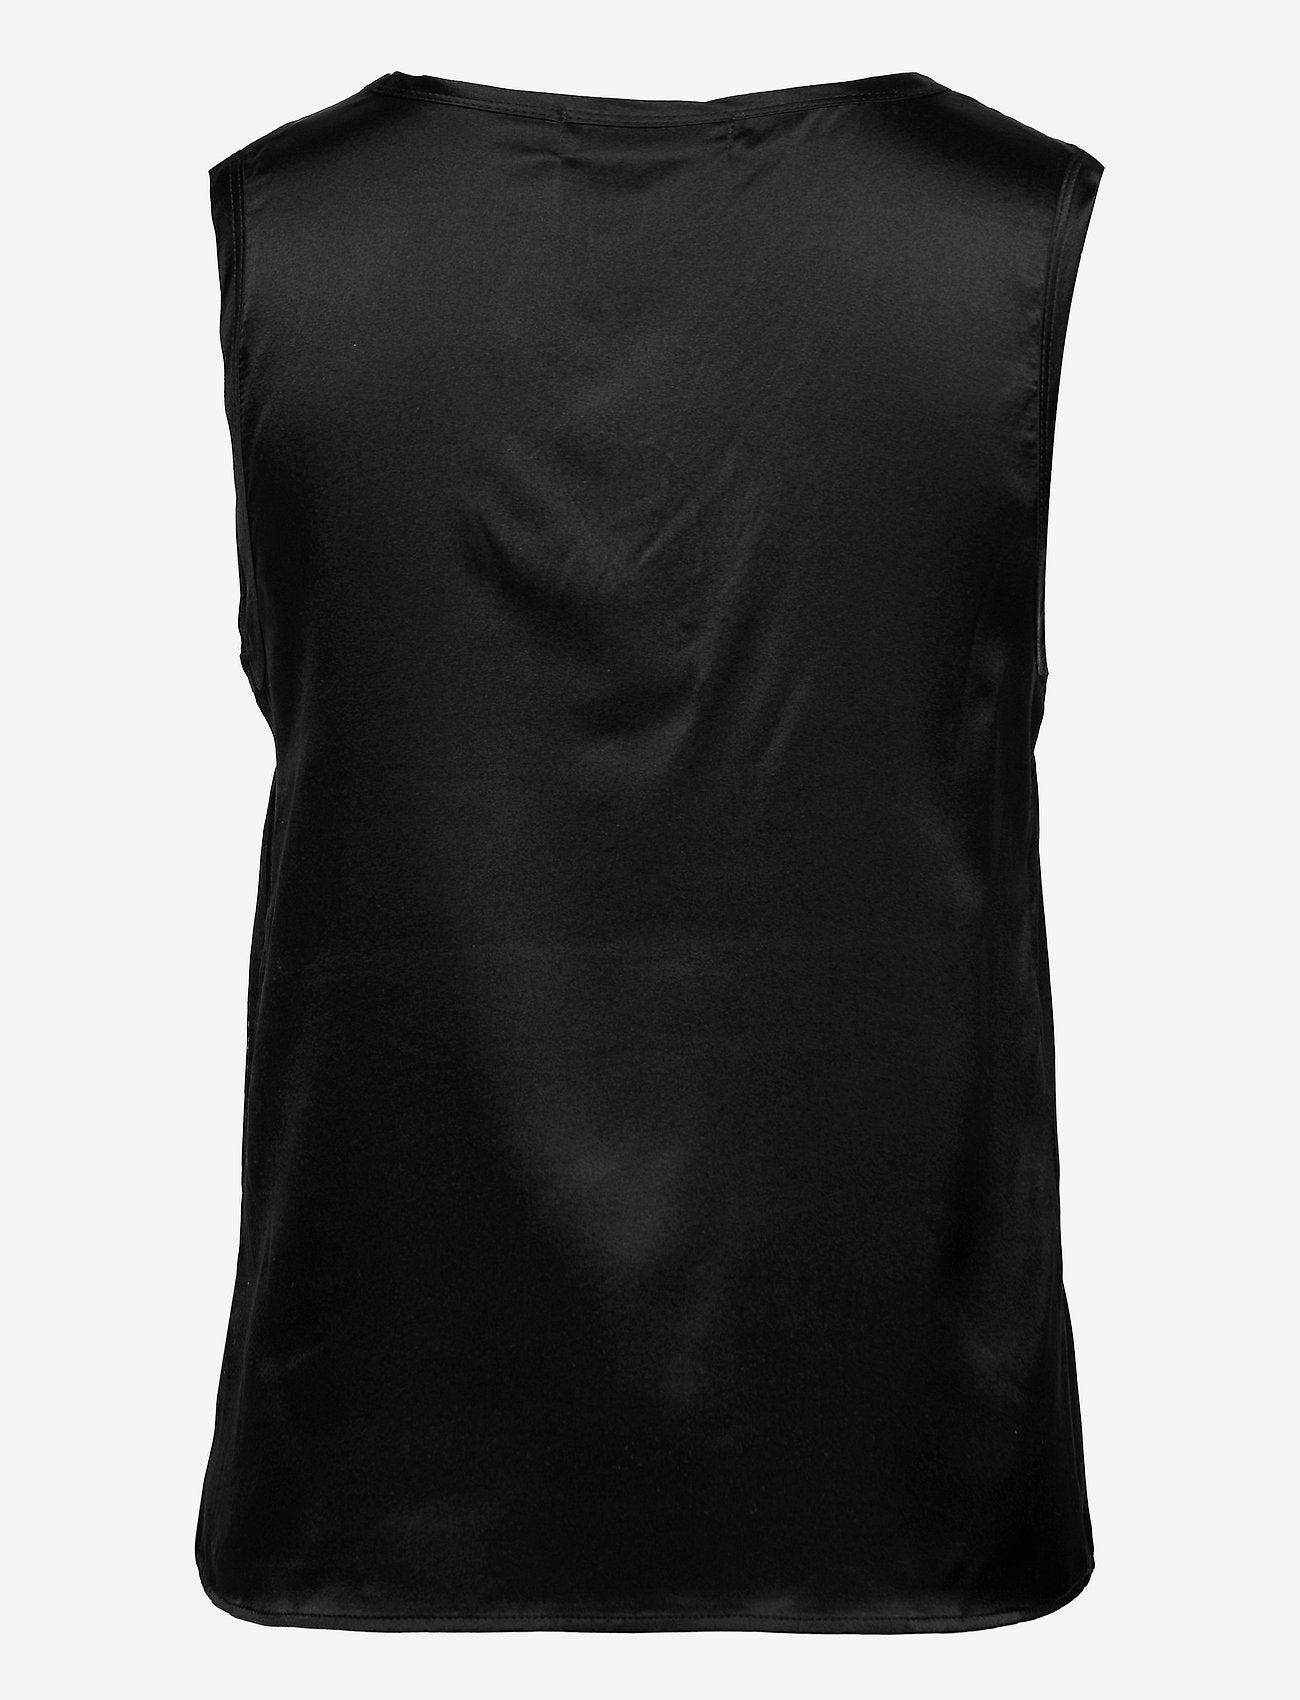 Shop Silk V-Neck Top in Black, Ivory or Vintage Powder - Rosemunde